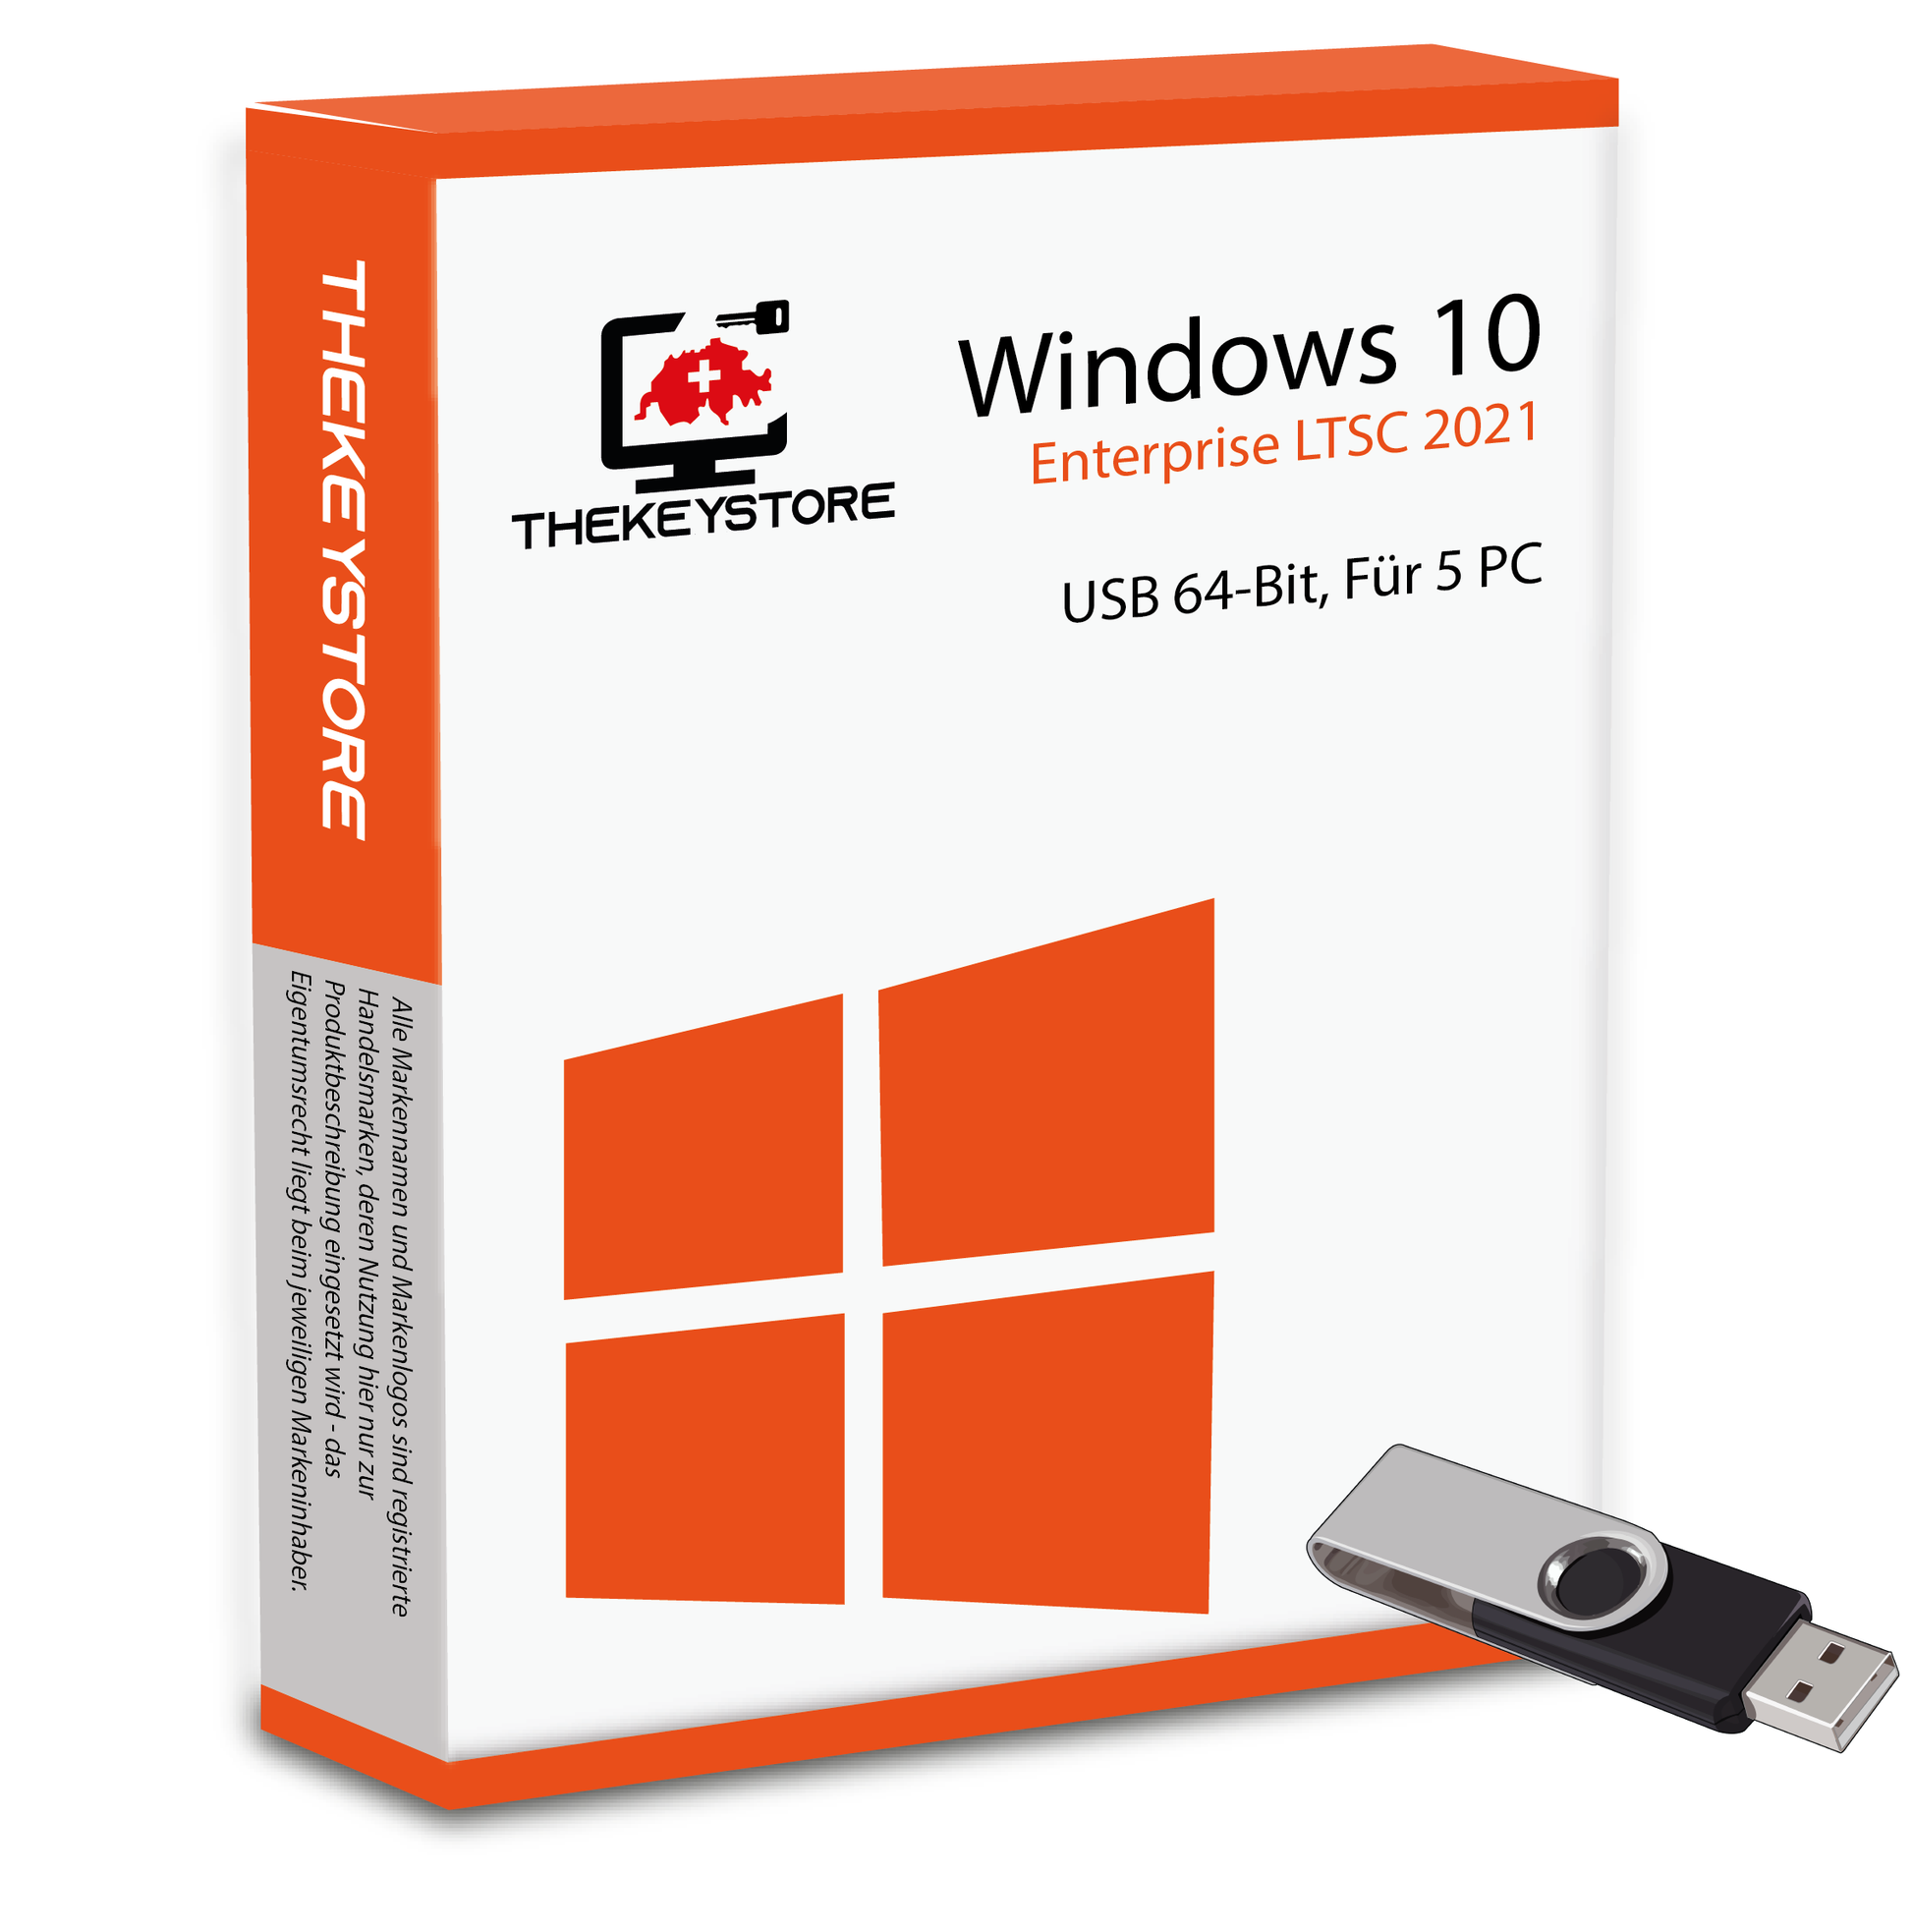 Microsoft Windows 10 Enterprise LTSC 2021 - Für 5 PC - TheKeyStore Schweiz